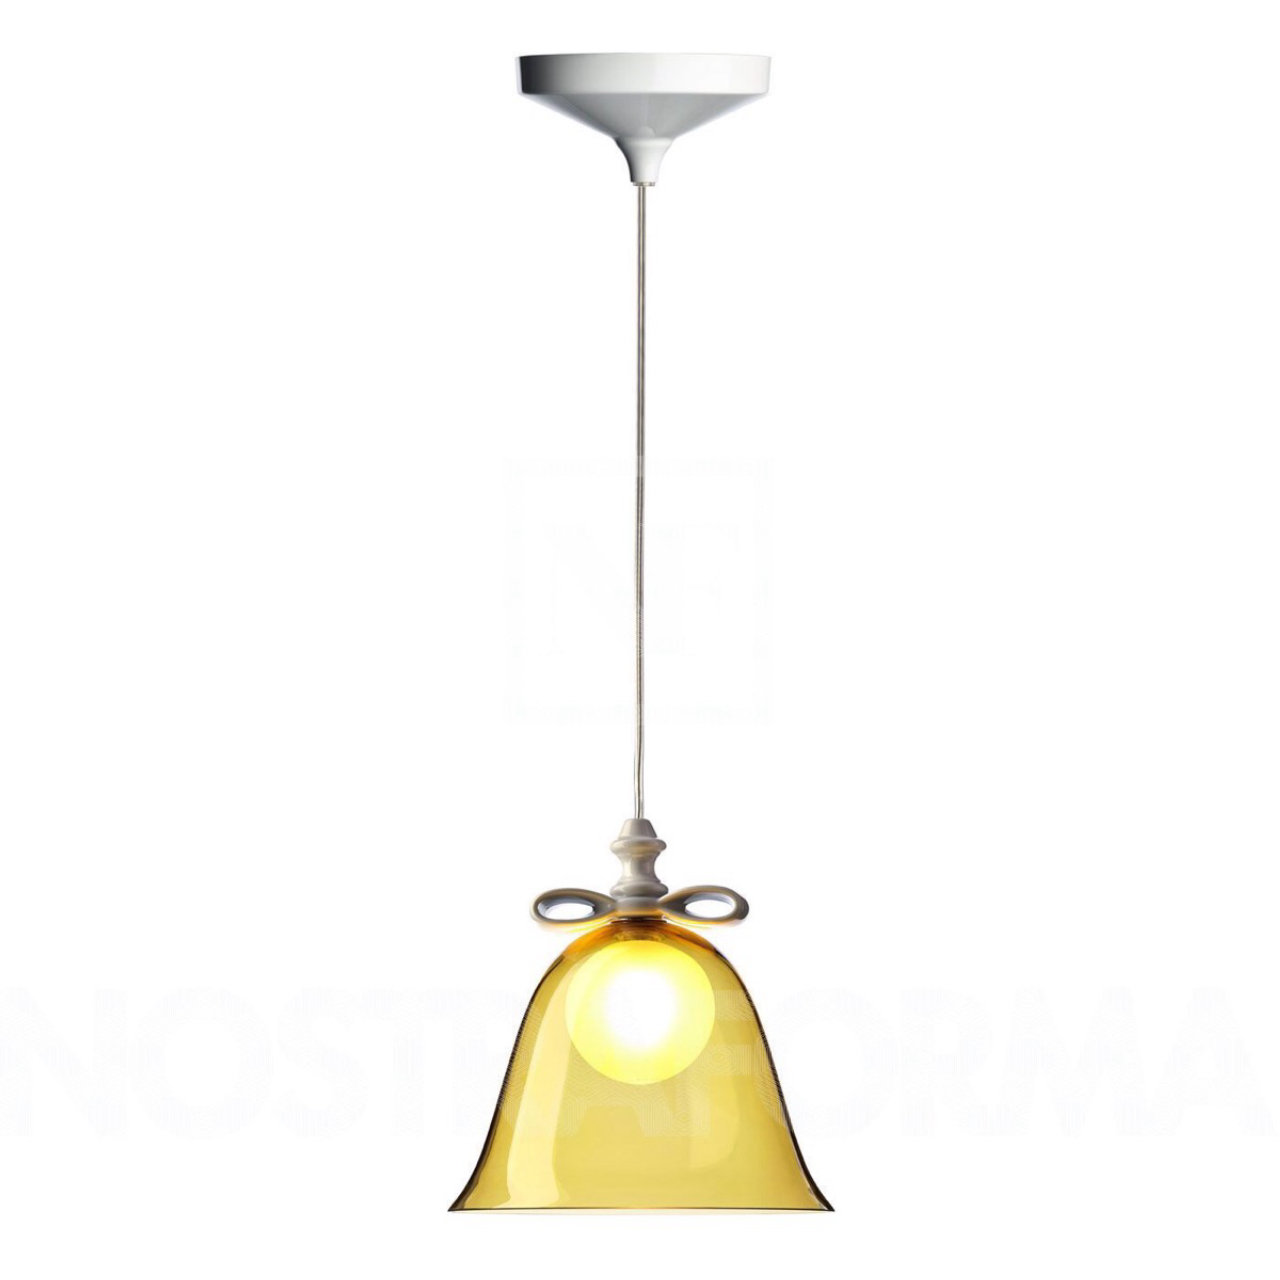 Foto: Luminária Bell Lamp, da Moooi, disponível no e-commerce Design Black Friday. Foto: divulgação.